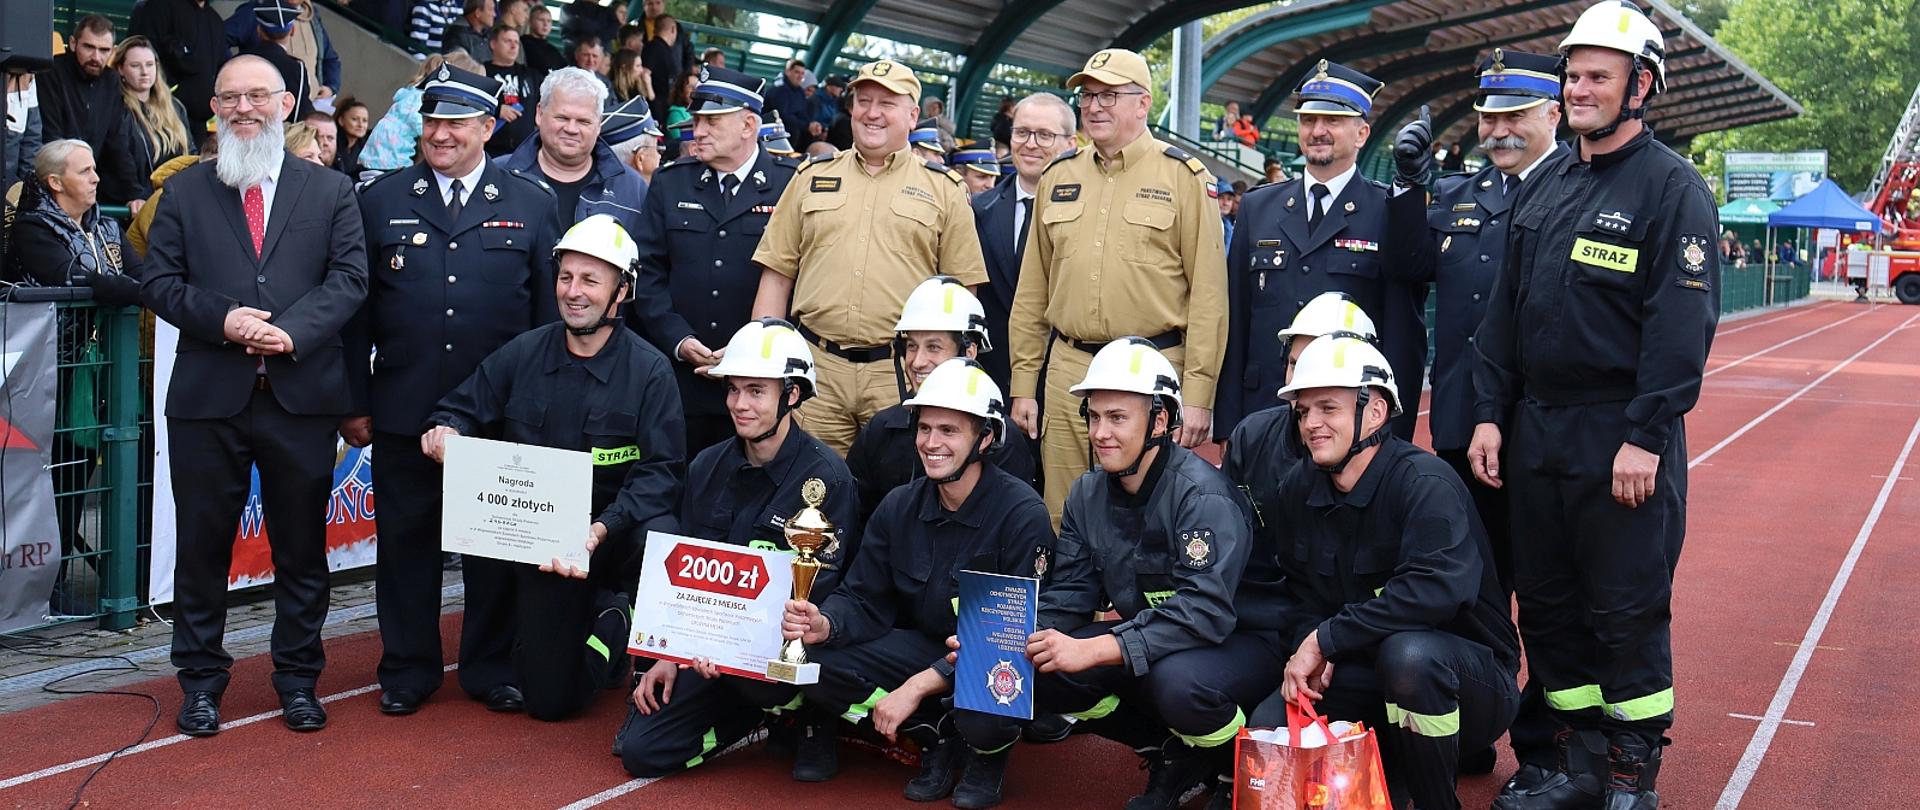 zwycięska drużyna ochotniczej straży pożarnej pozująca do zdjęcia na stadionie sportowym, wśród zawodników stoją również komendanci z państwowej straży pożarnej w tle zadaszenie trybun